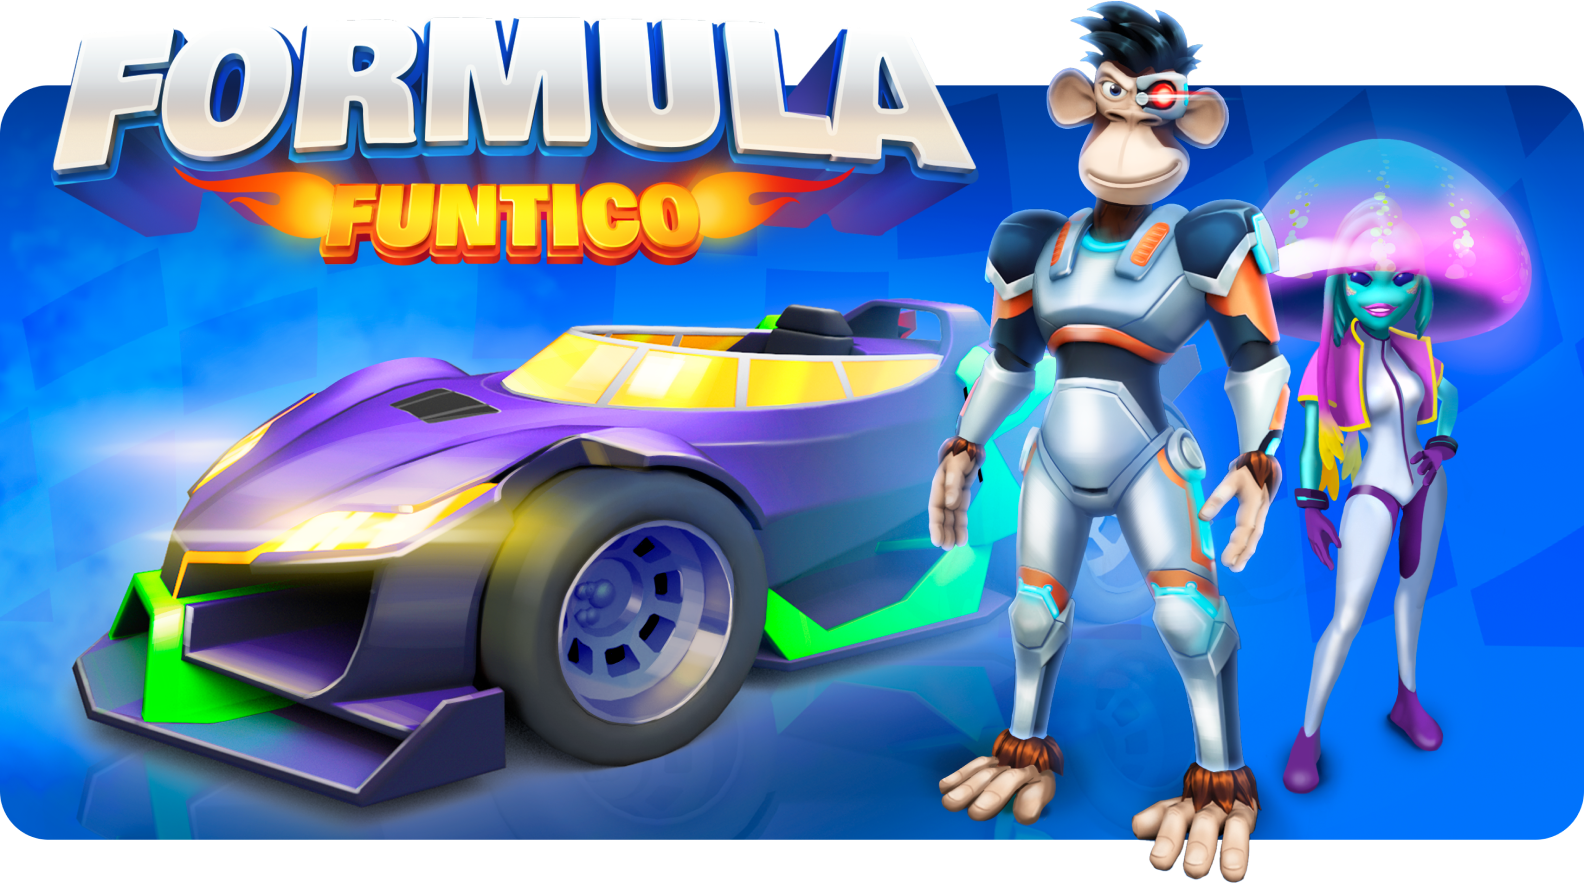 Formula Funtico Tournament